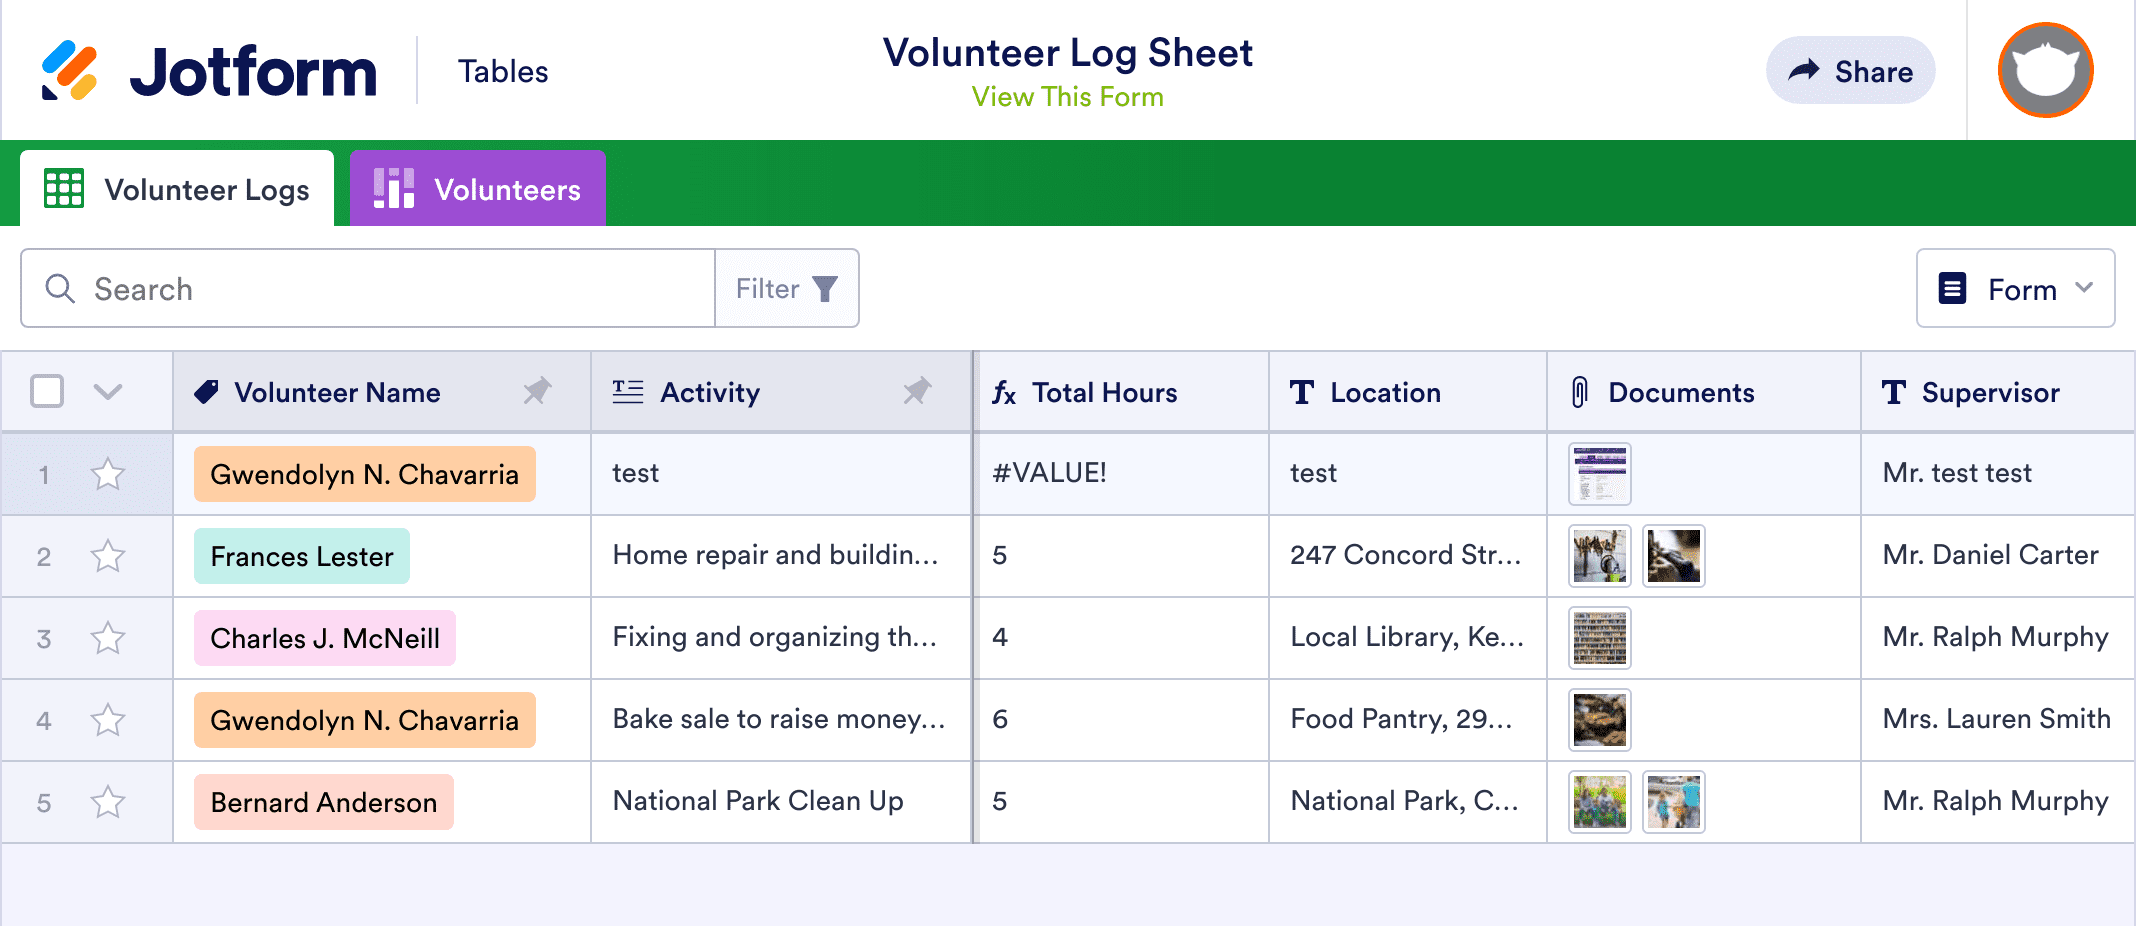 Volunteer Log Sheet